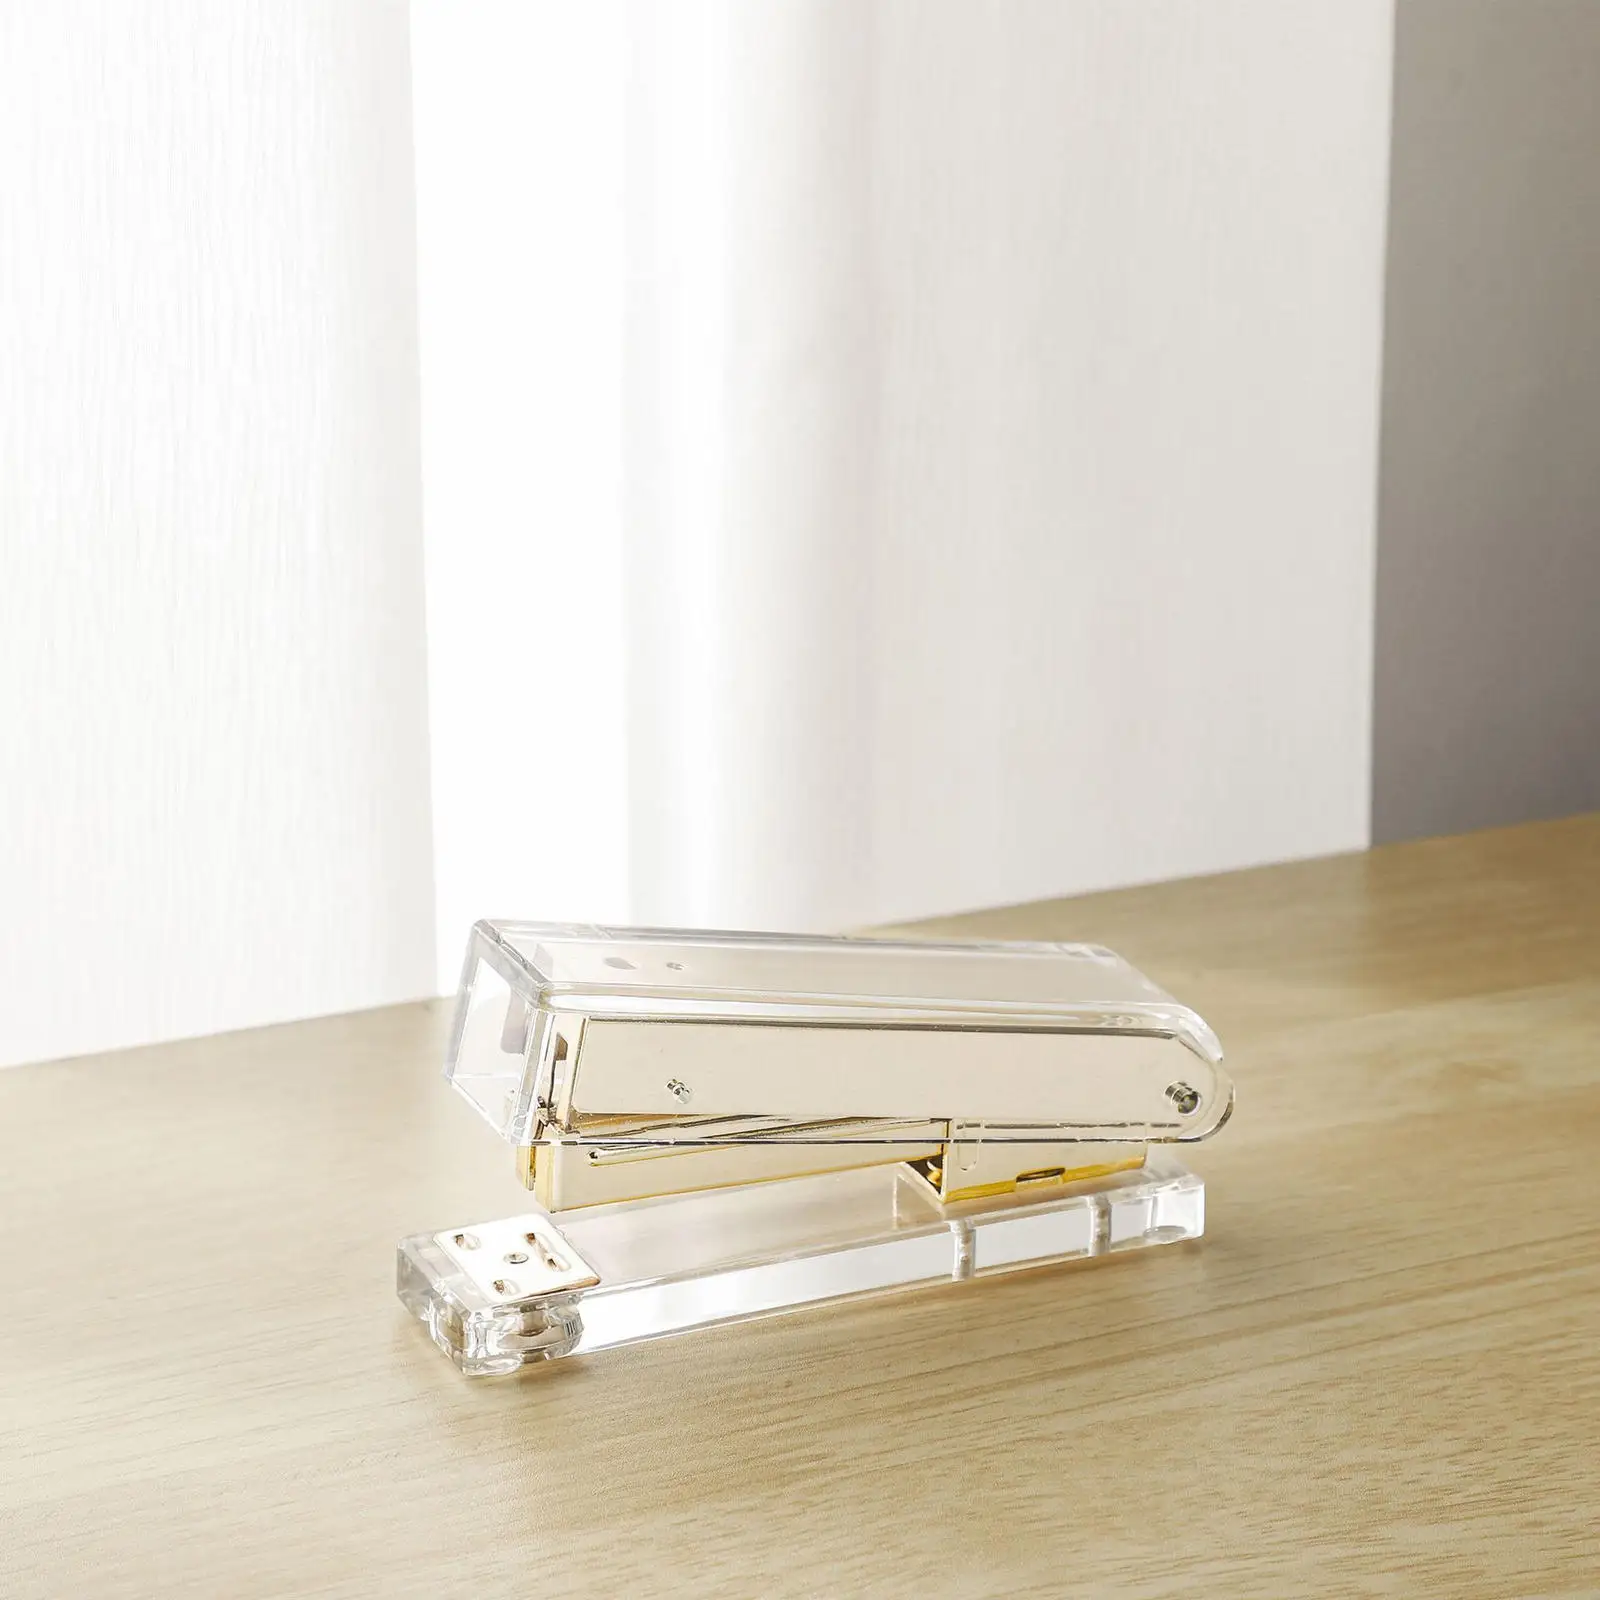 Rose Gold/Gold Manual Stapler Transparent Acrylic Stapler for Home School Office Student Teacher